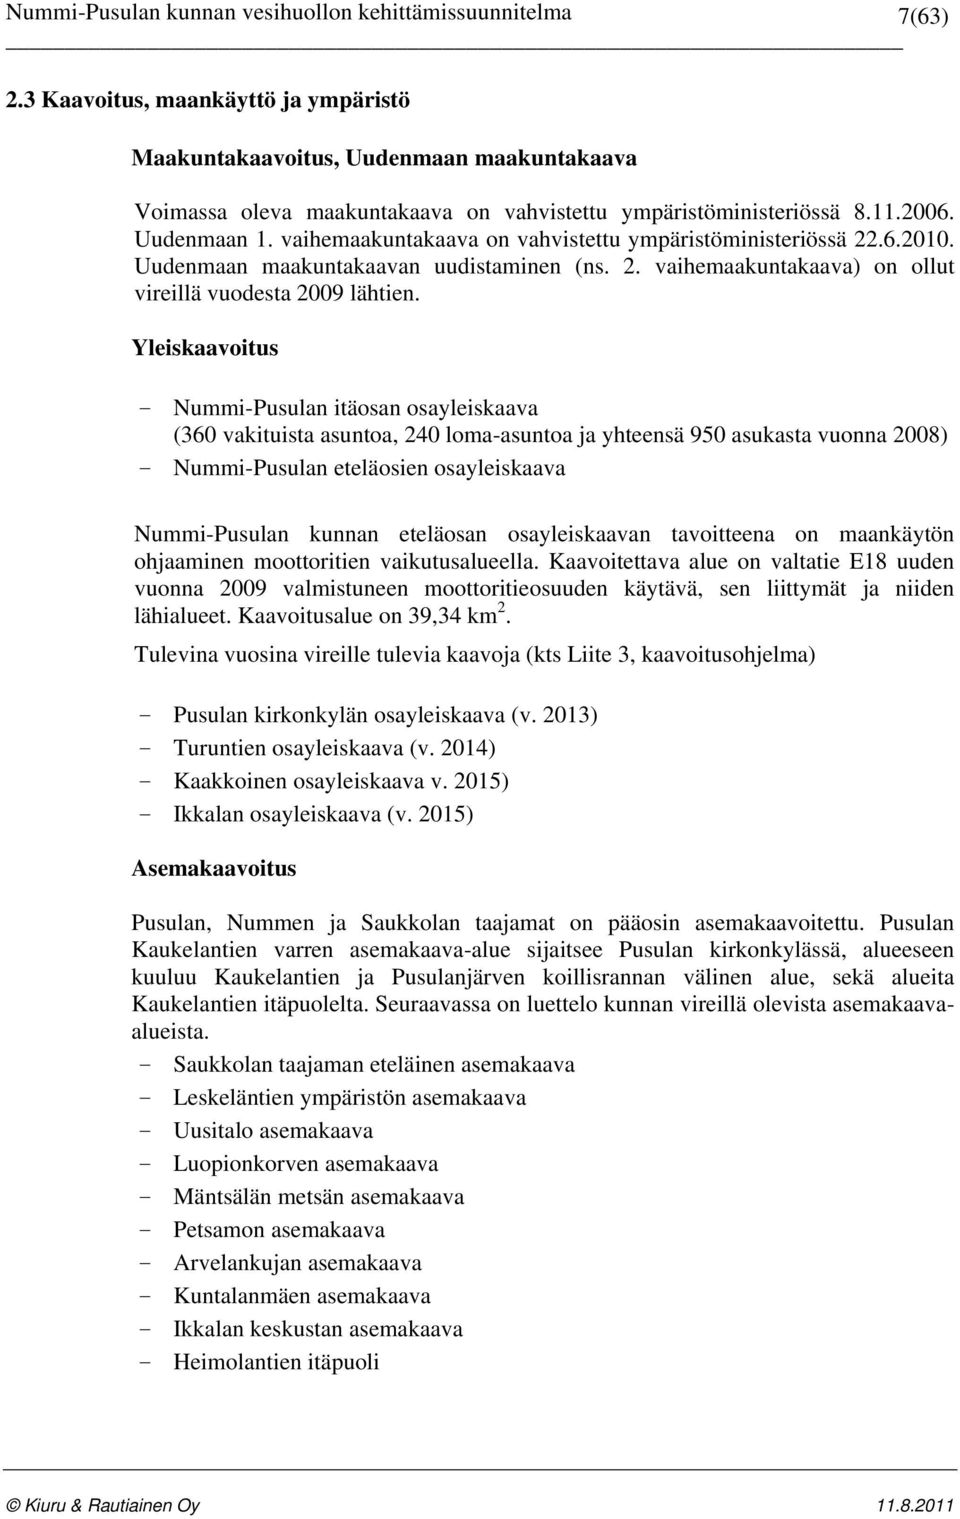 Yleiskaavoitus - Nummi-Pusulan itäosan osayleiskaava (360 vakituista asuntoa, 240 loma-asuntoa ja yhteensä 950 asukasta vuonna 2008) - Nummi-Pusulan eteläosien osayleiskaava Nummi-Pusulan kunnan